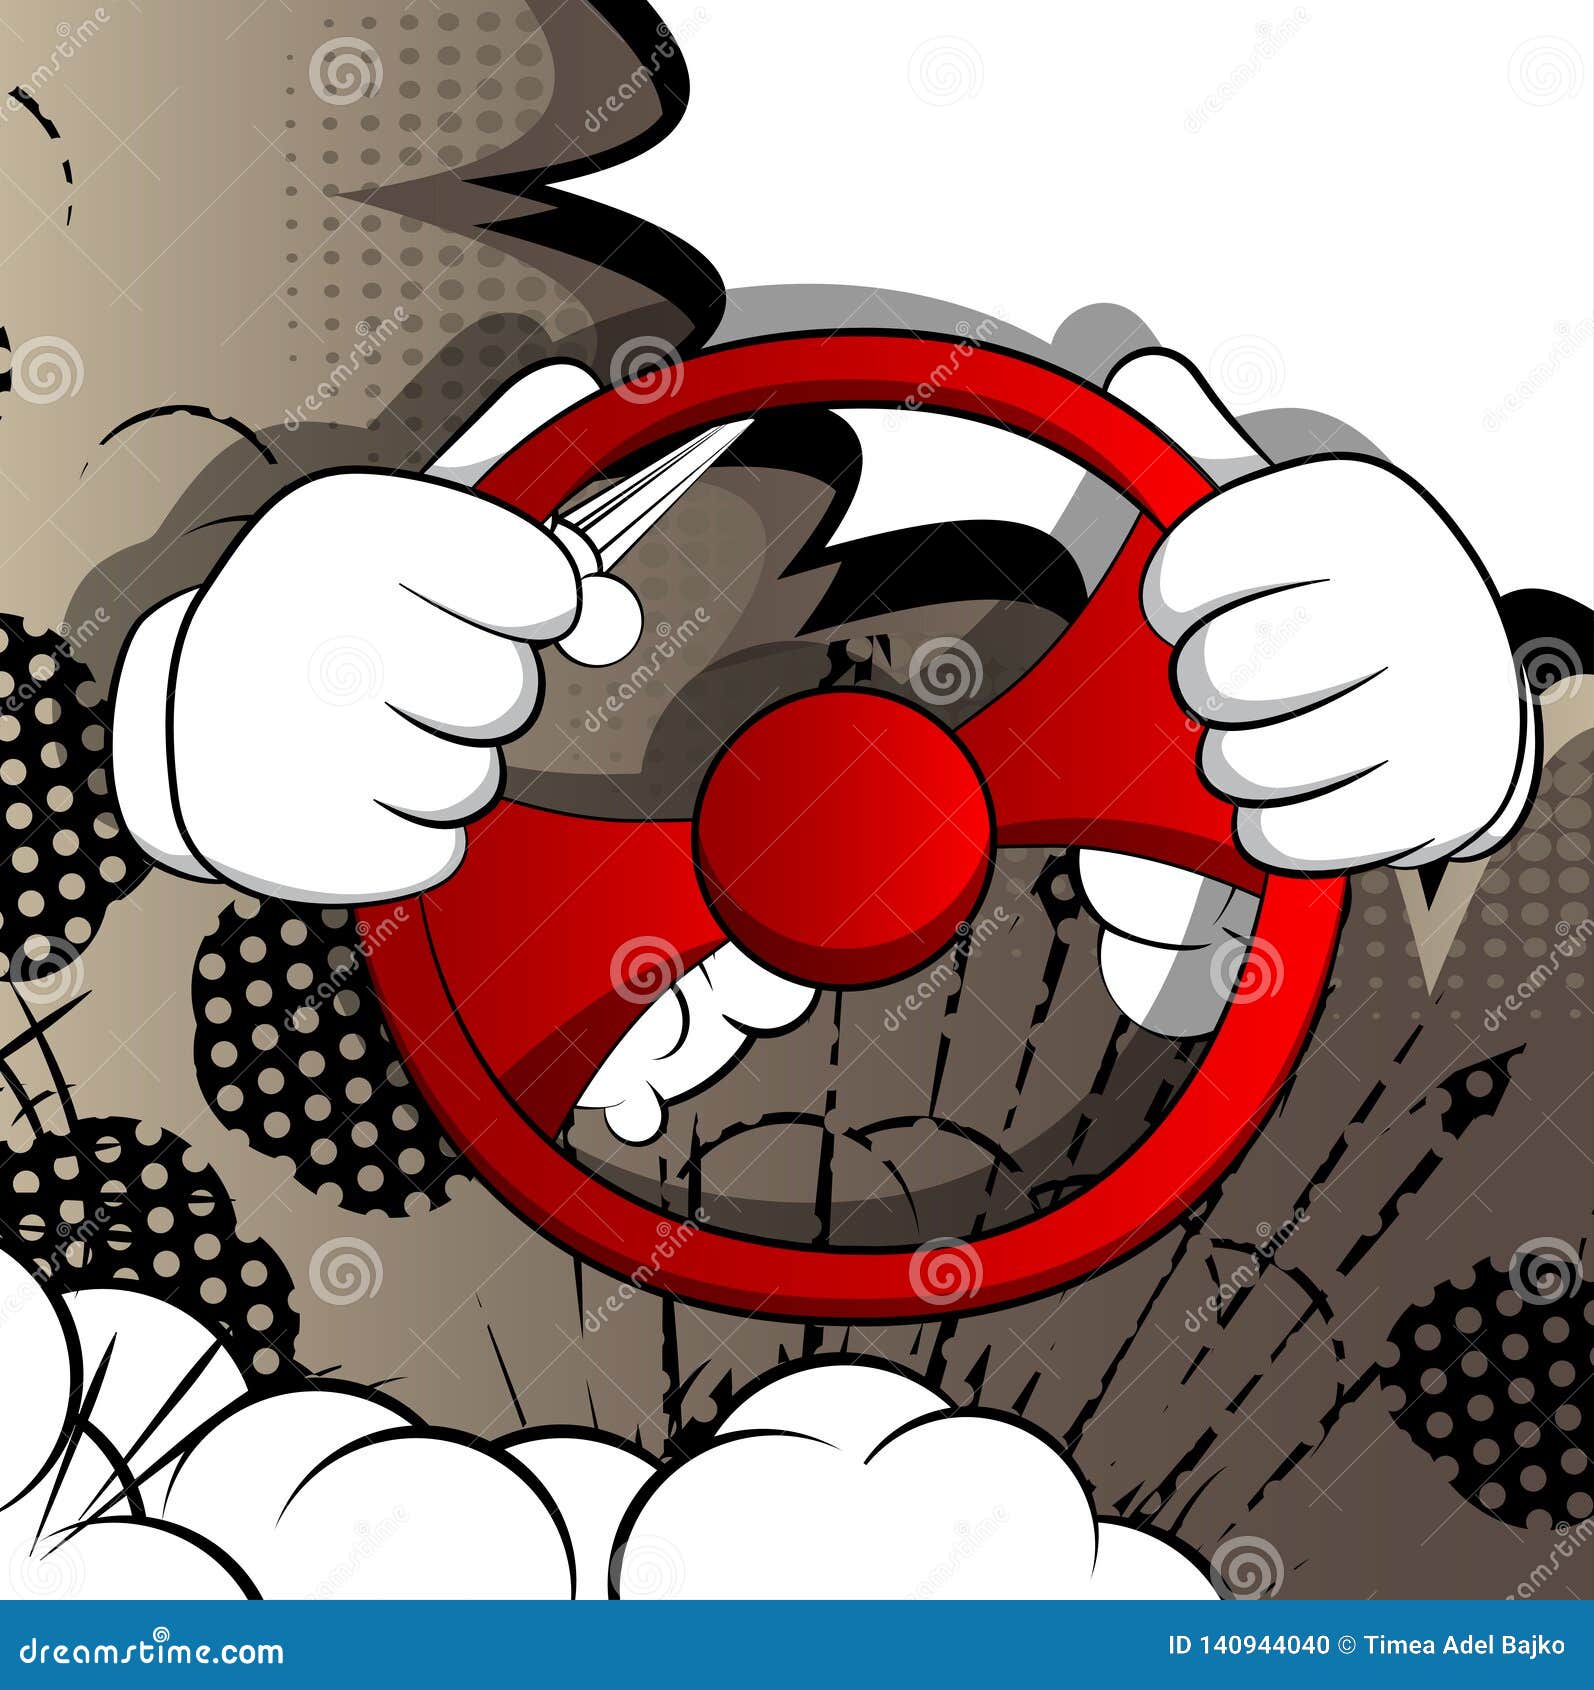 Steering Wheel Cartoon Hands Stock Illustrations – 174 Steering Wheel  Cartoon Hands Stock Illustrations, Vectors & Clipart - Dreamstime